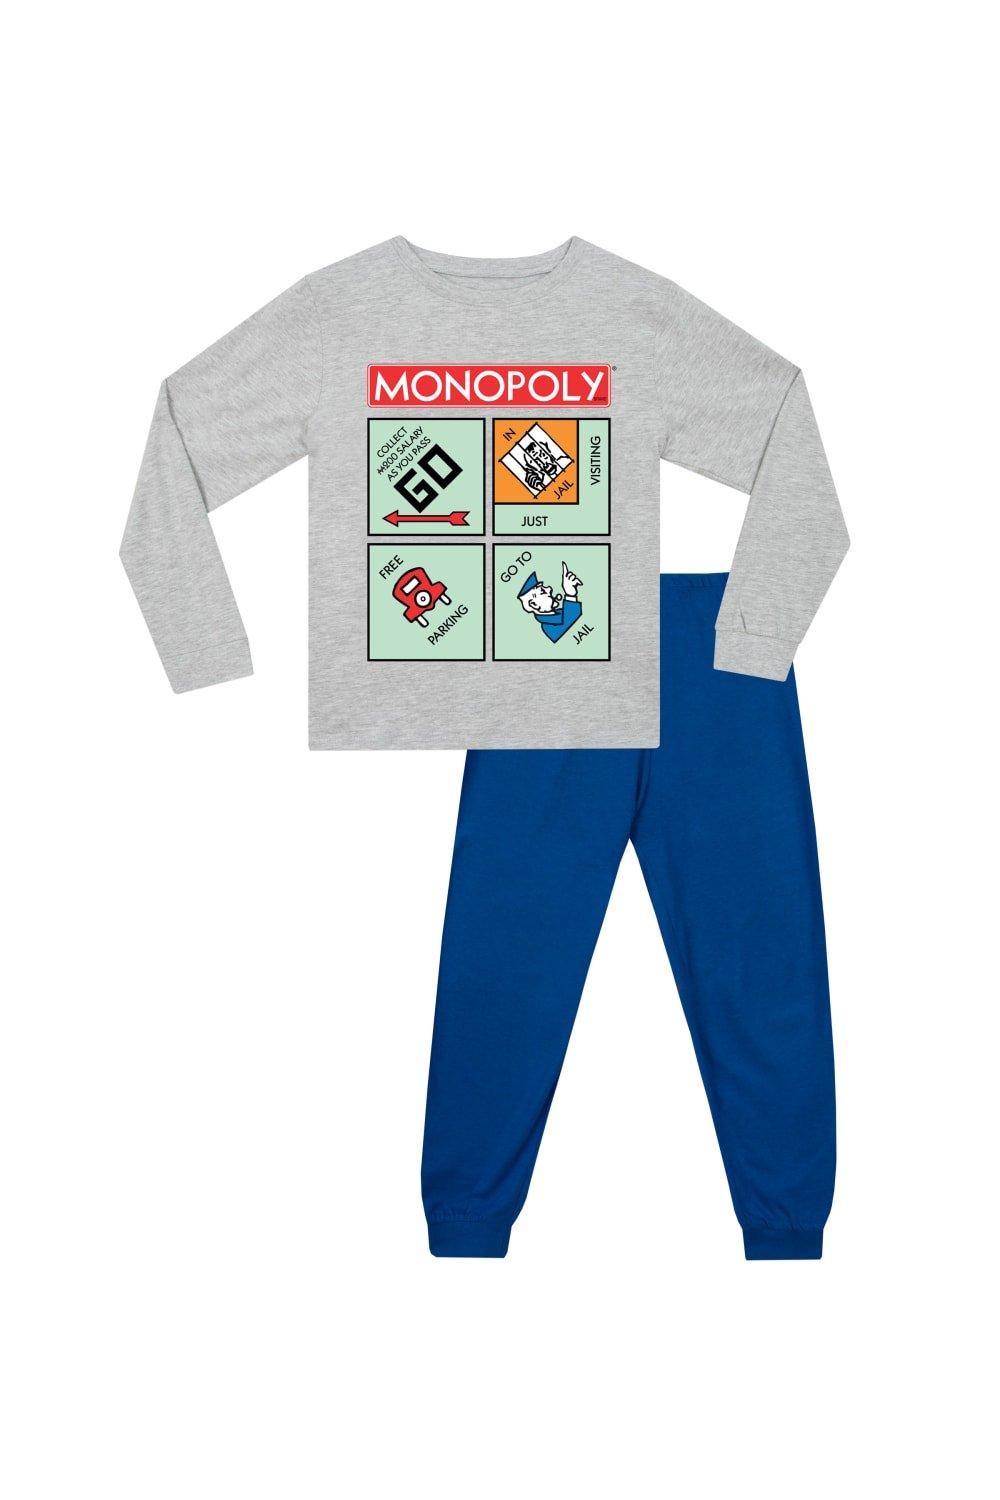 Monopoly Pyjamas